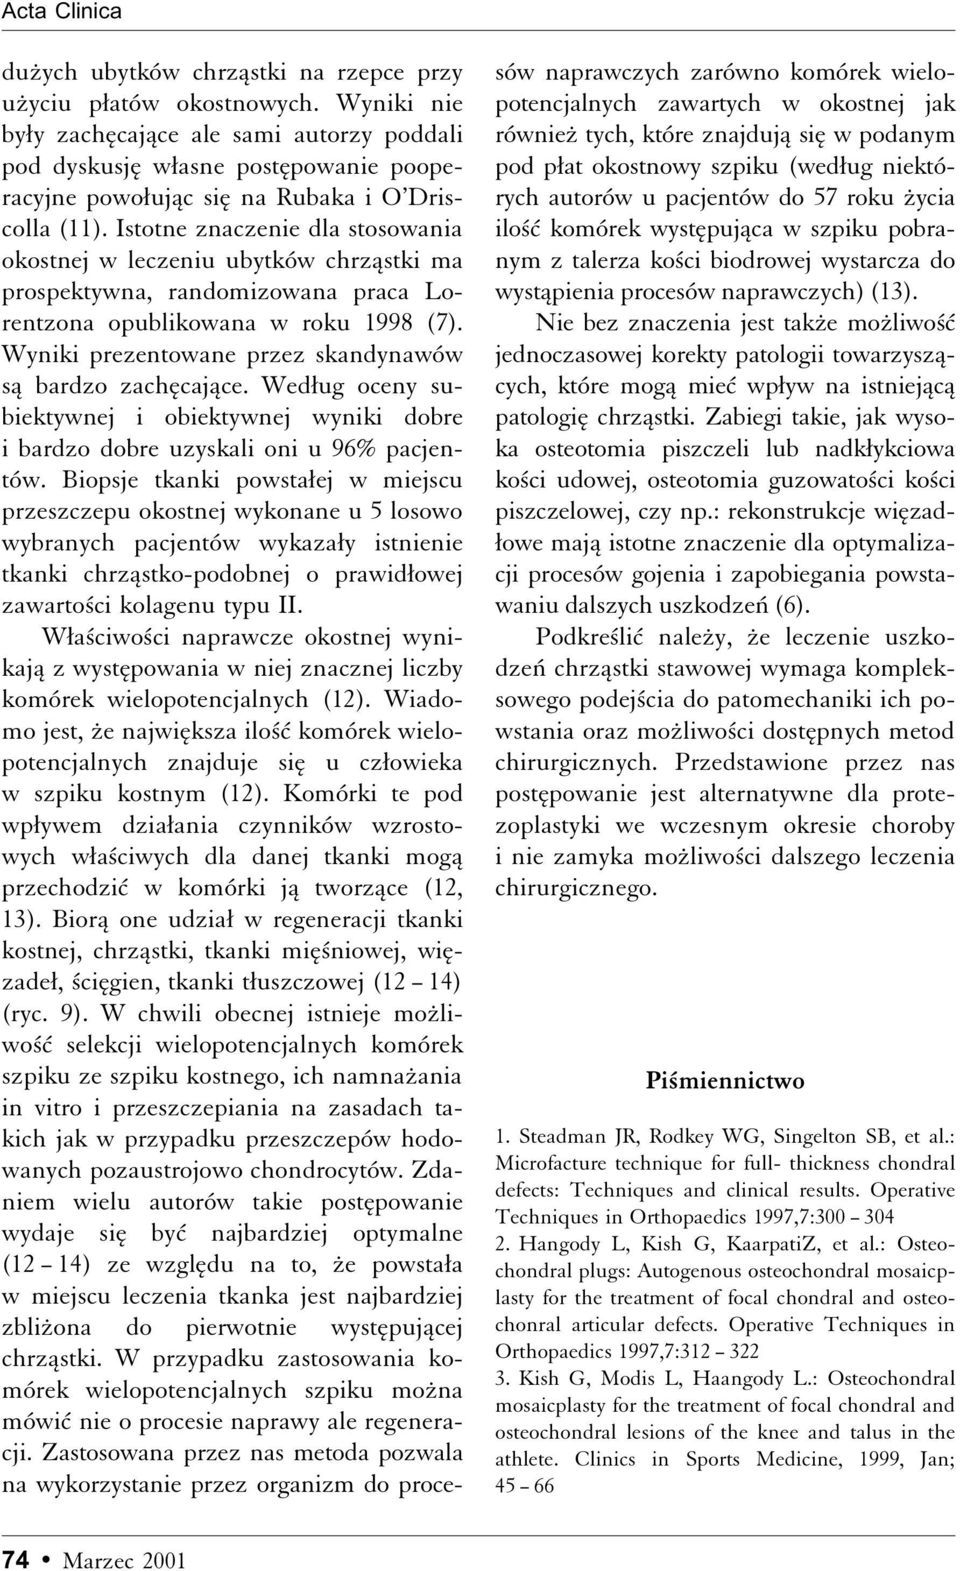 Istotne znaczenie dla stosowania okostnej w leczeniu ubytków chrzåstki ma prospektywna, randomizowana praca Lorentzona opublikowana w roku 1998 (7).